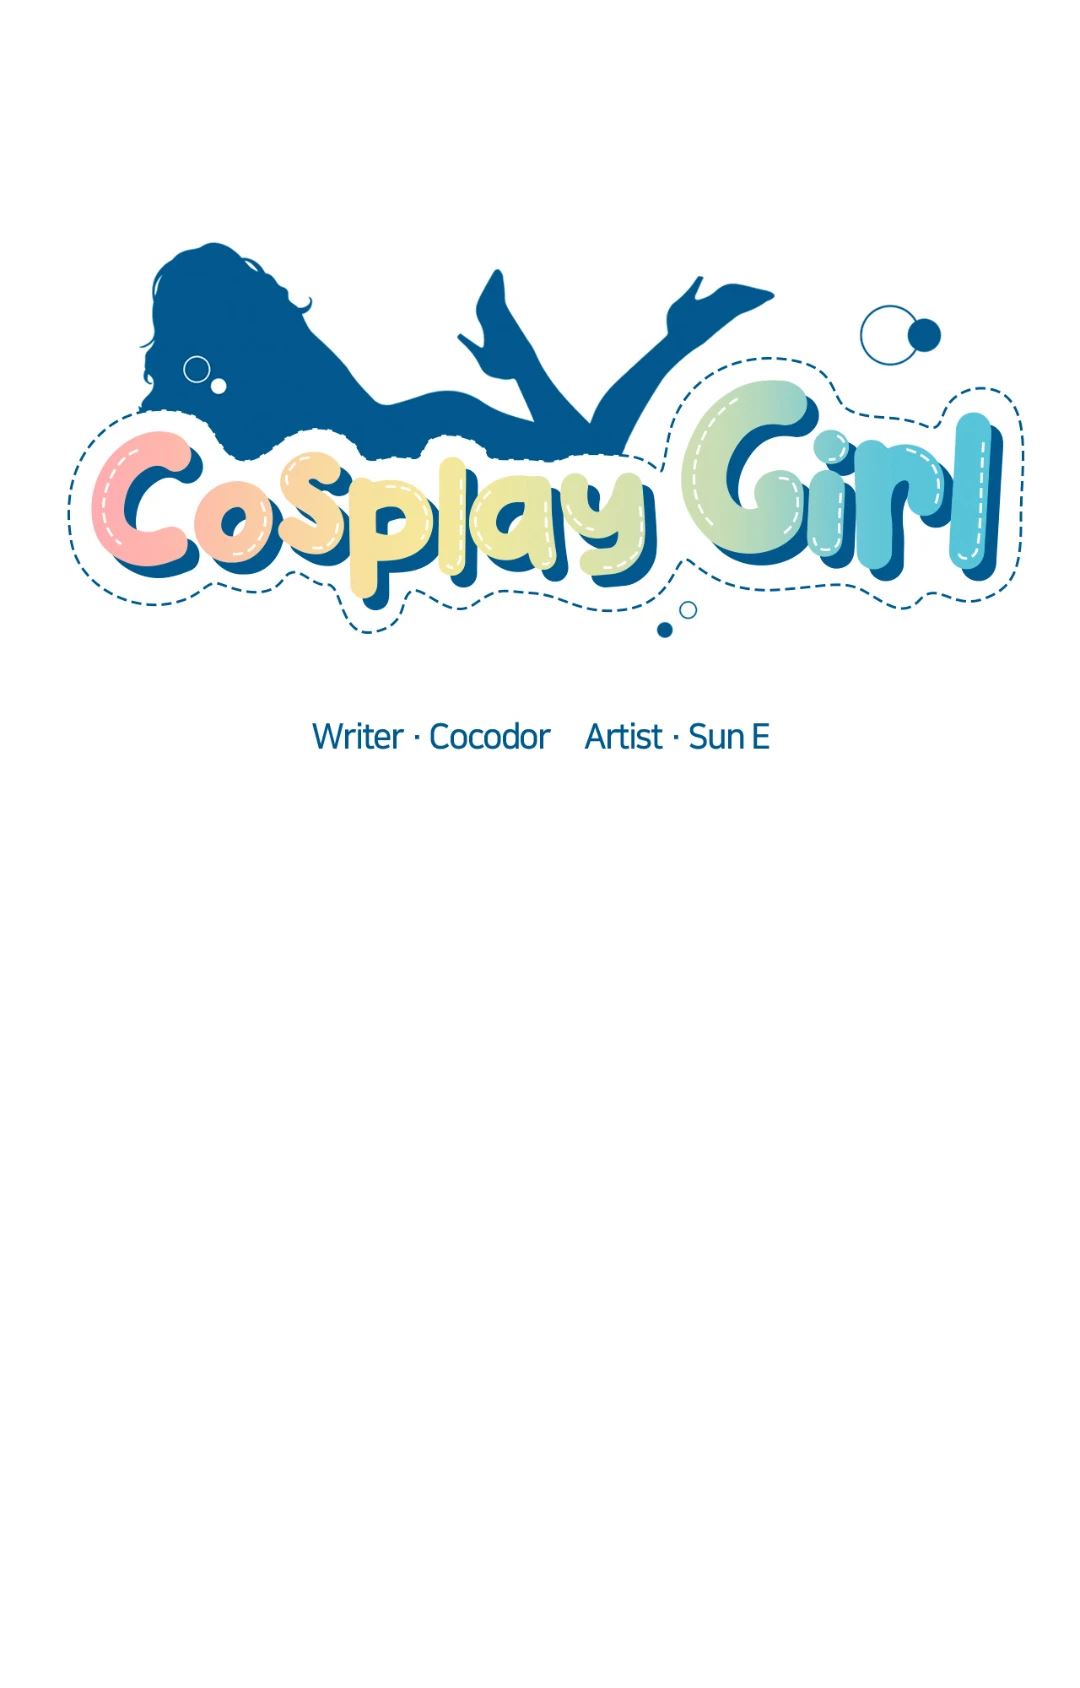 Cosplay Girl image